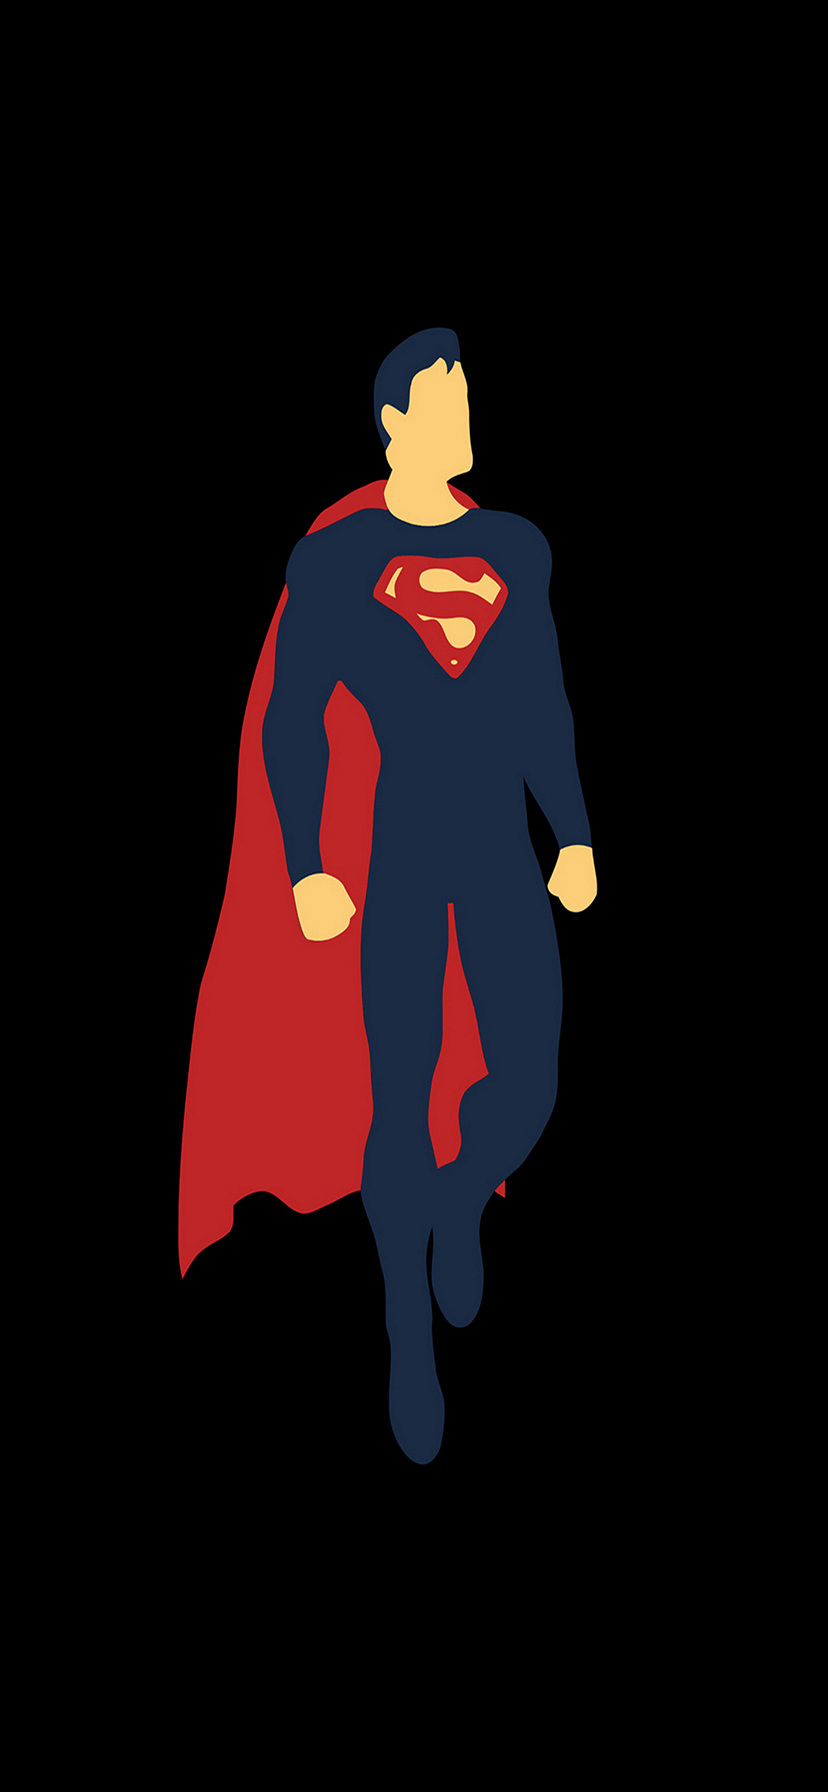 スーパーマンのイラスト Iphone Xr 壁紙 待ち受け Sumaran